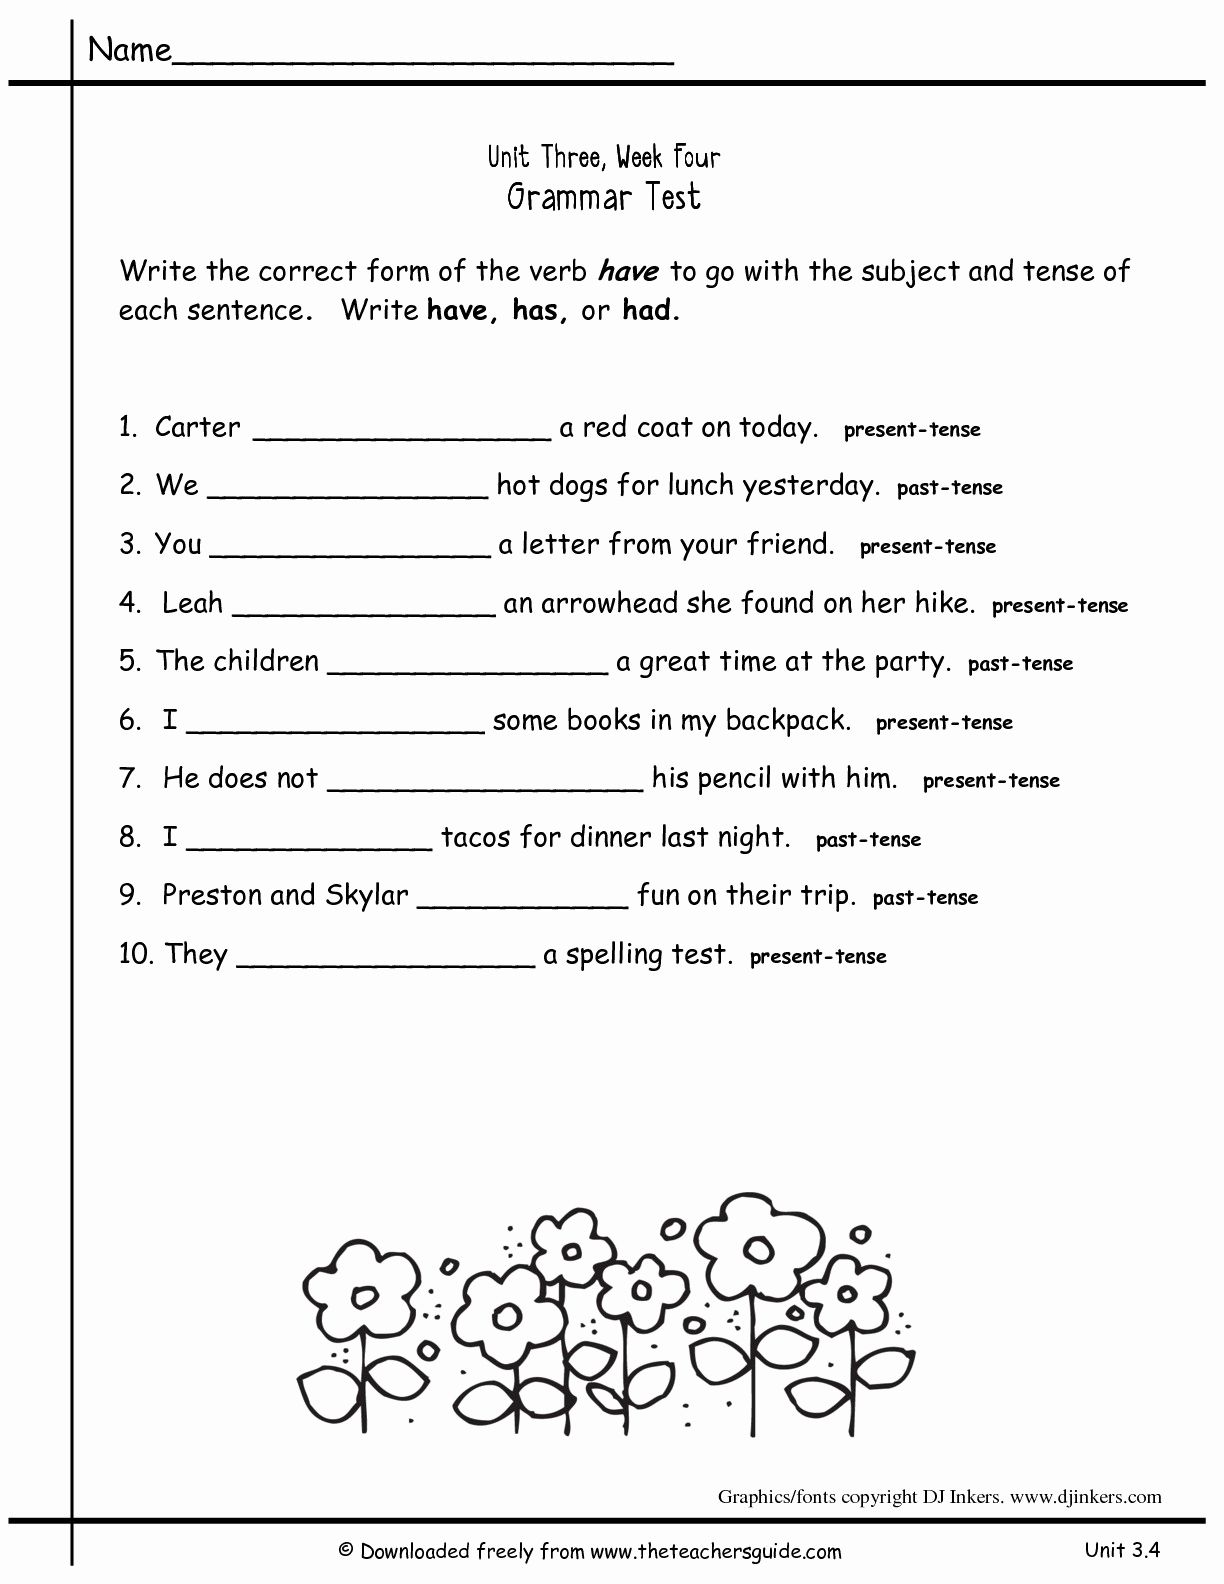 printable-year-4-english-worksheets-pdf-kidsworksheetfun-year-4